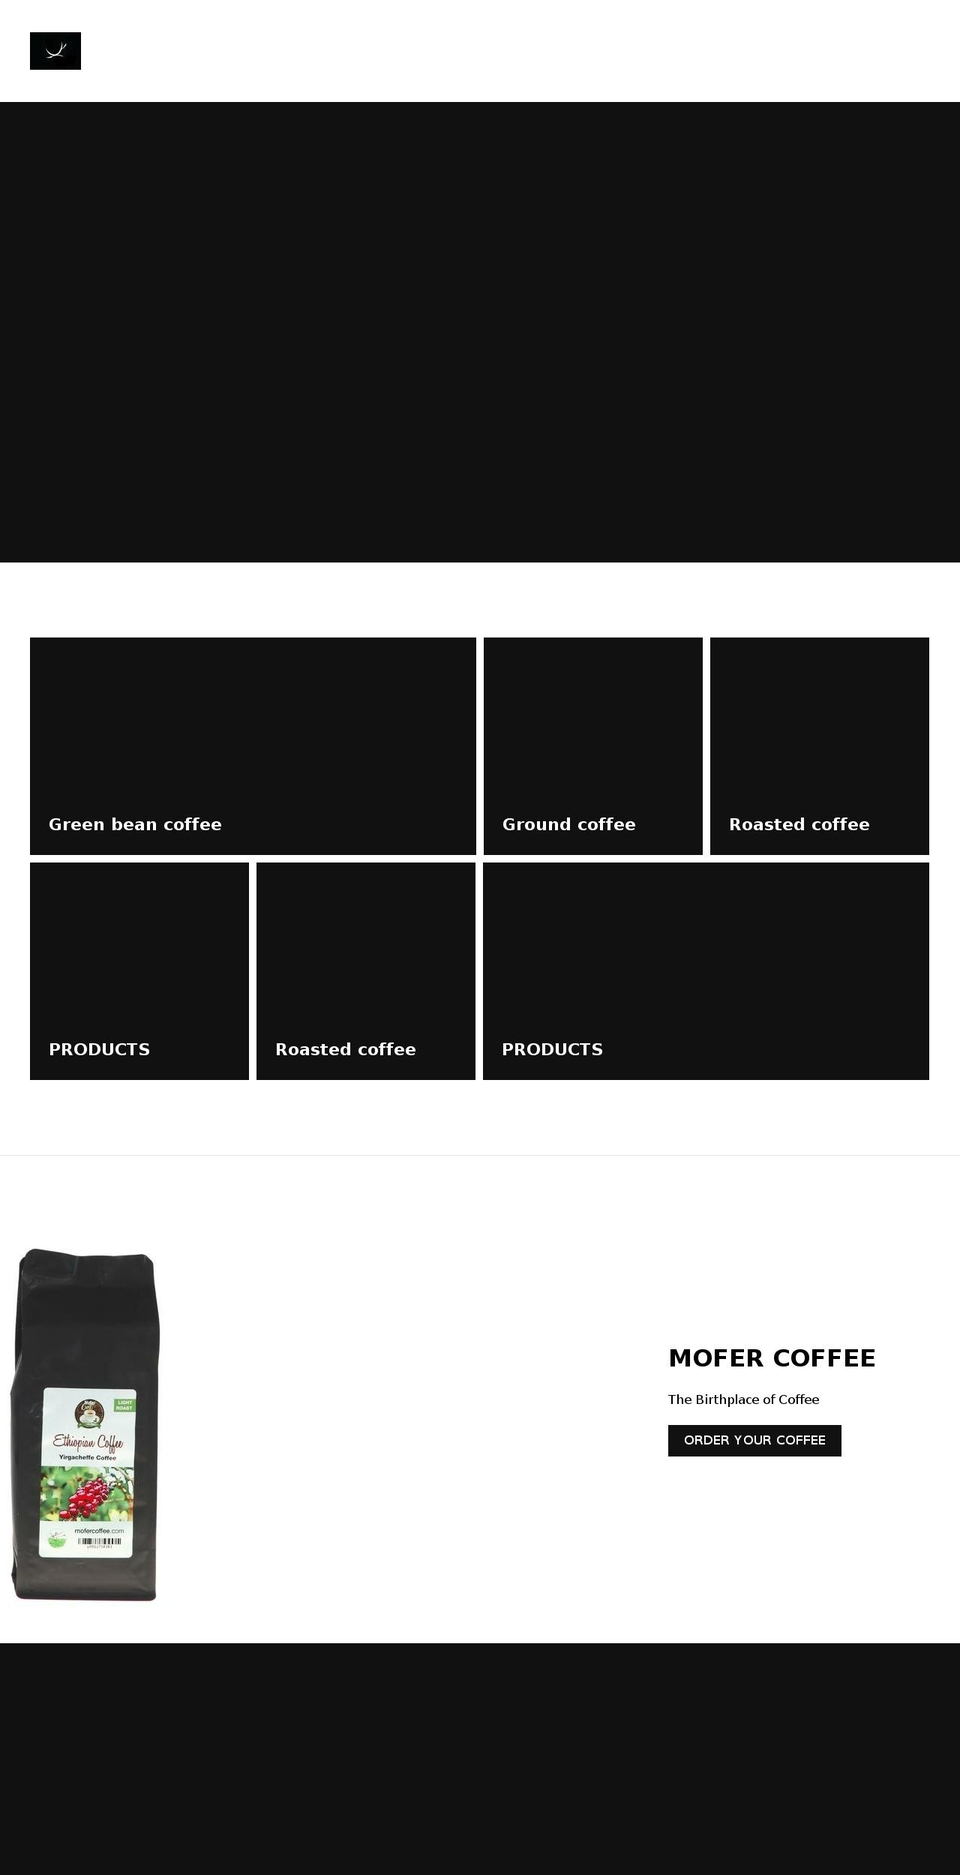 mofercoffee.com shopify website screenshot